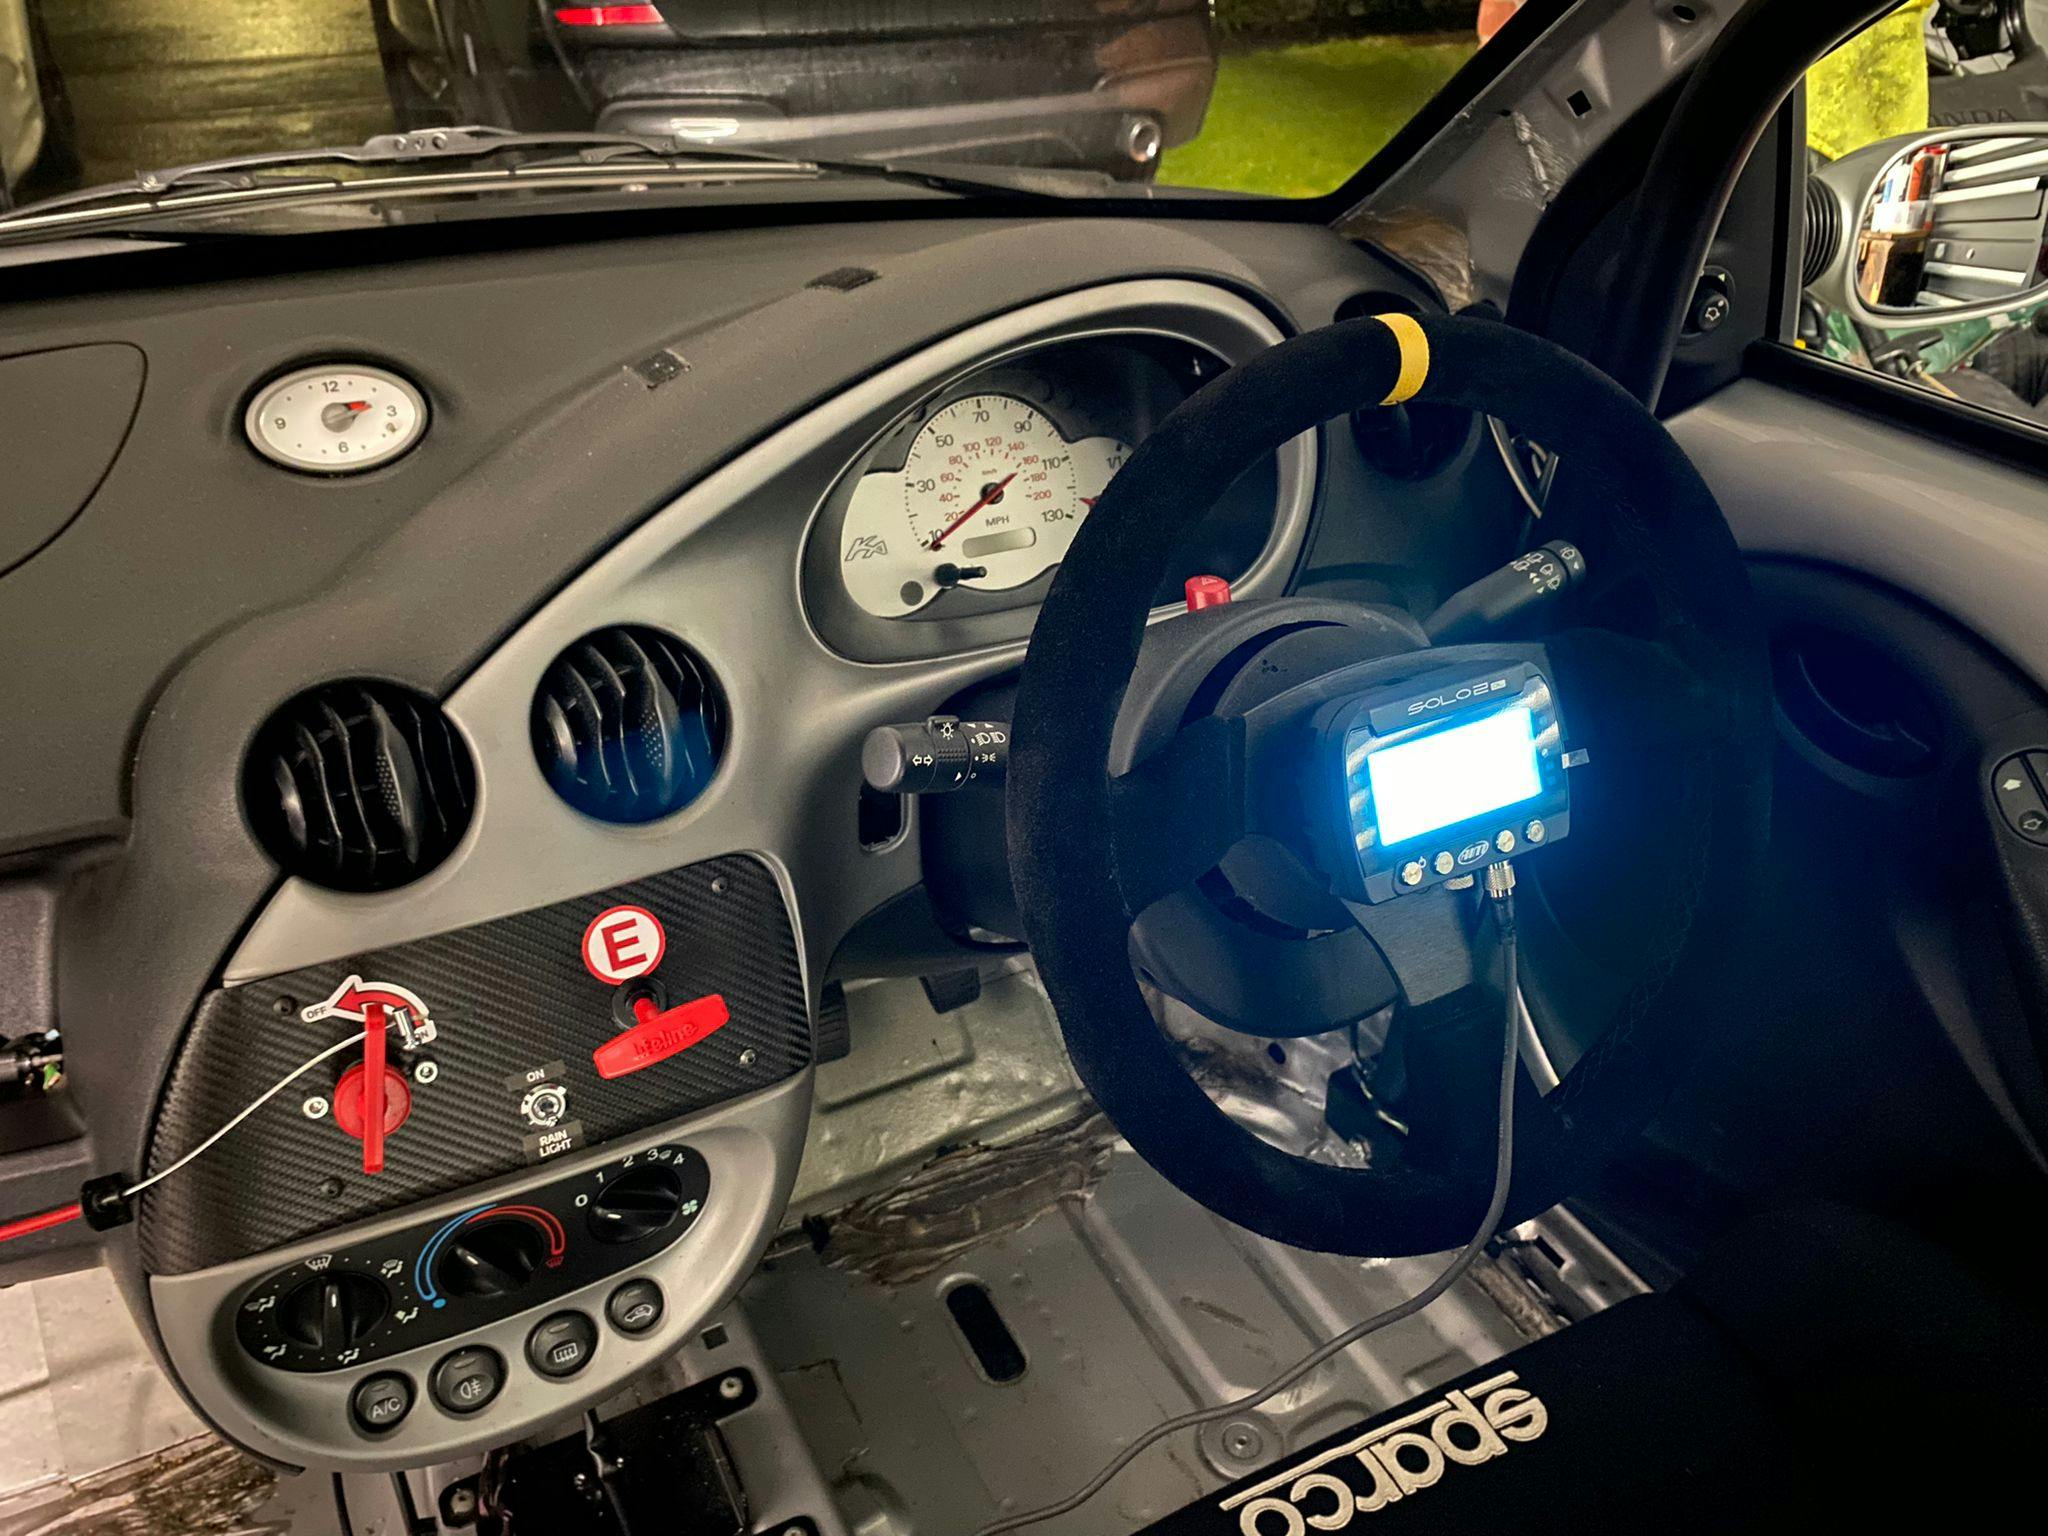 Ford Ka interior racing mods